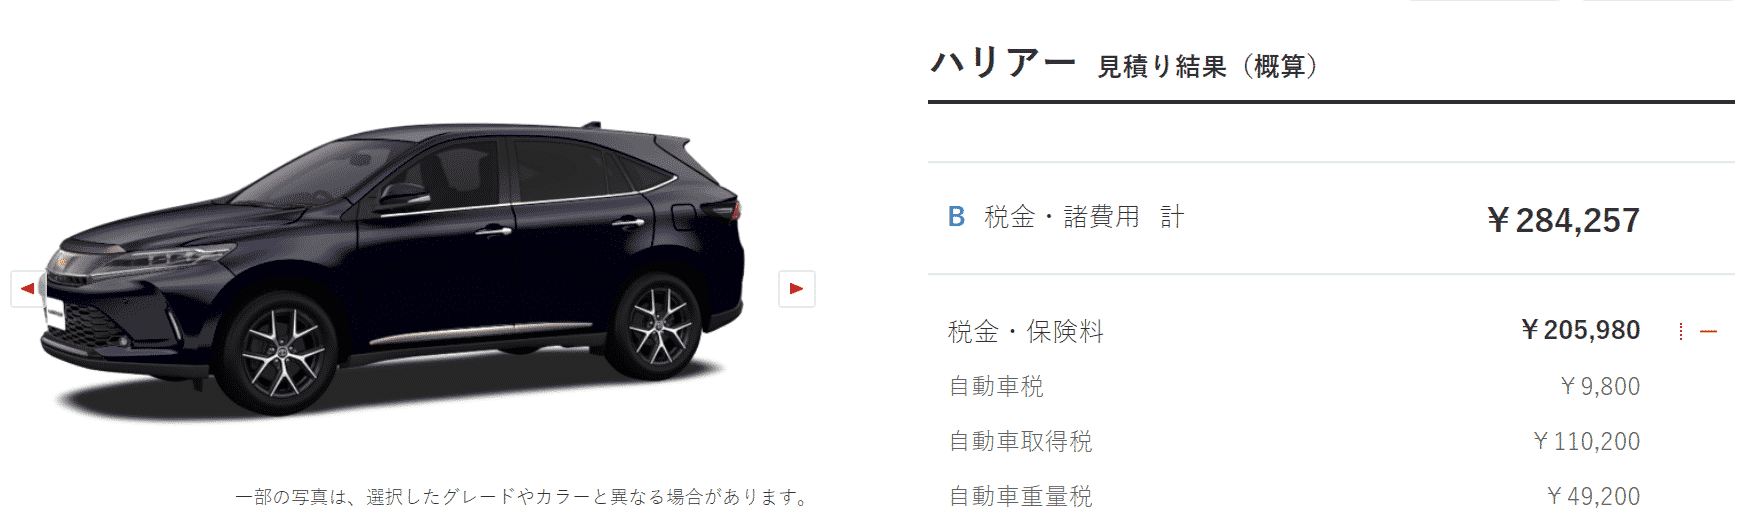 「特別仕様車 PROGRESS “Metal and Leather Package・Style BLUEISH”」ターボ車の税額画像